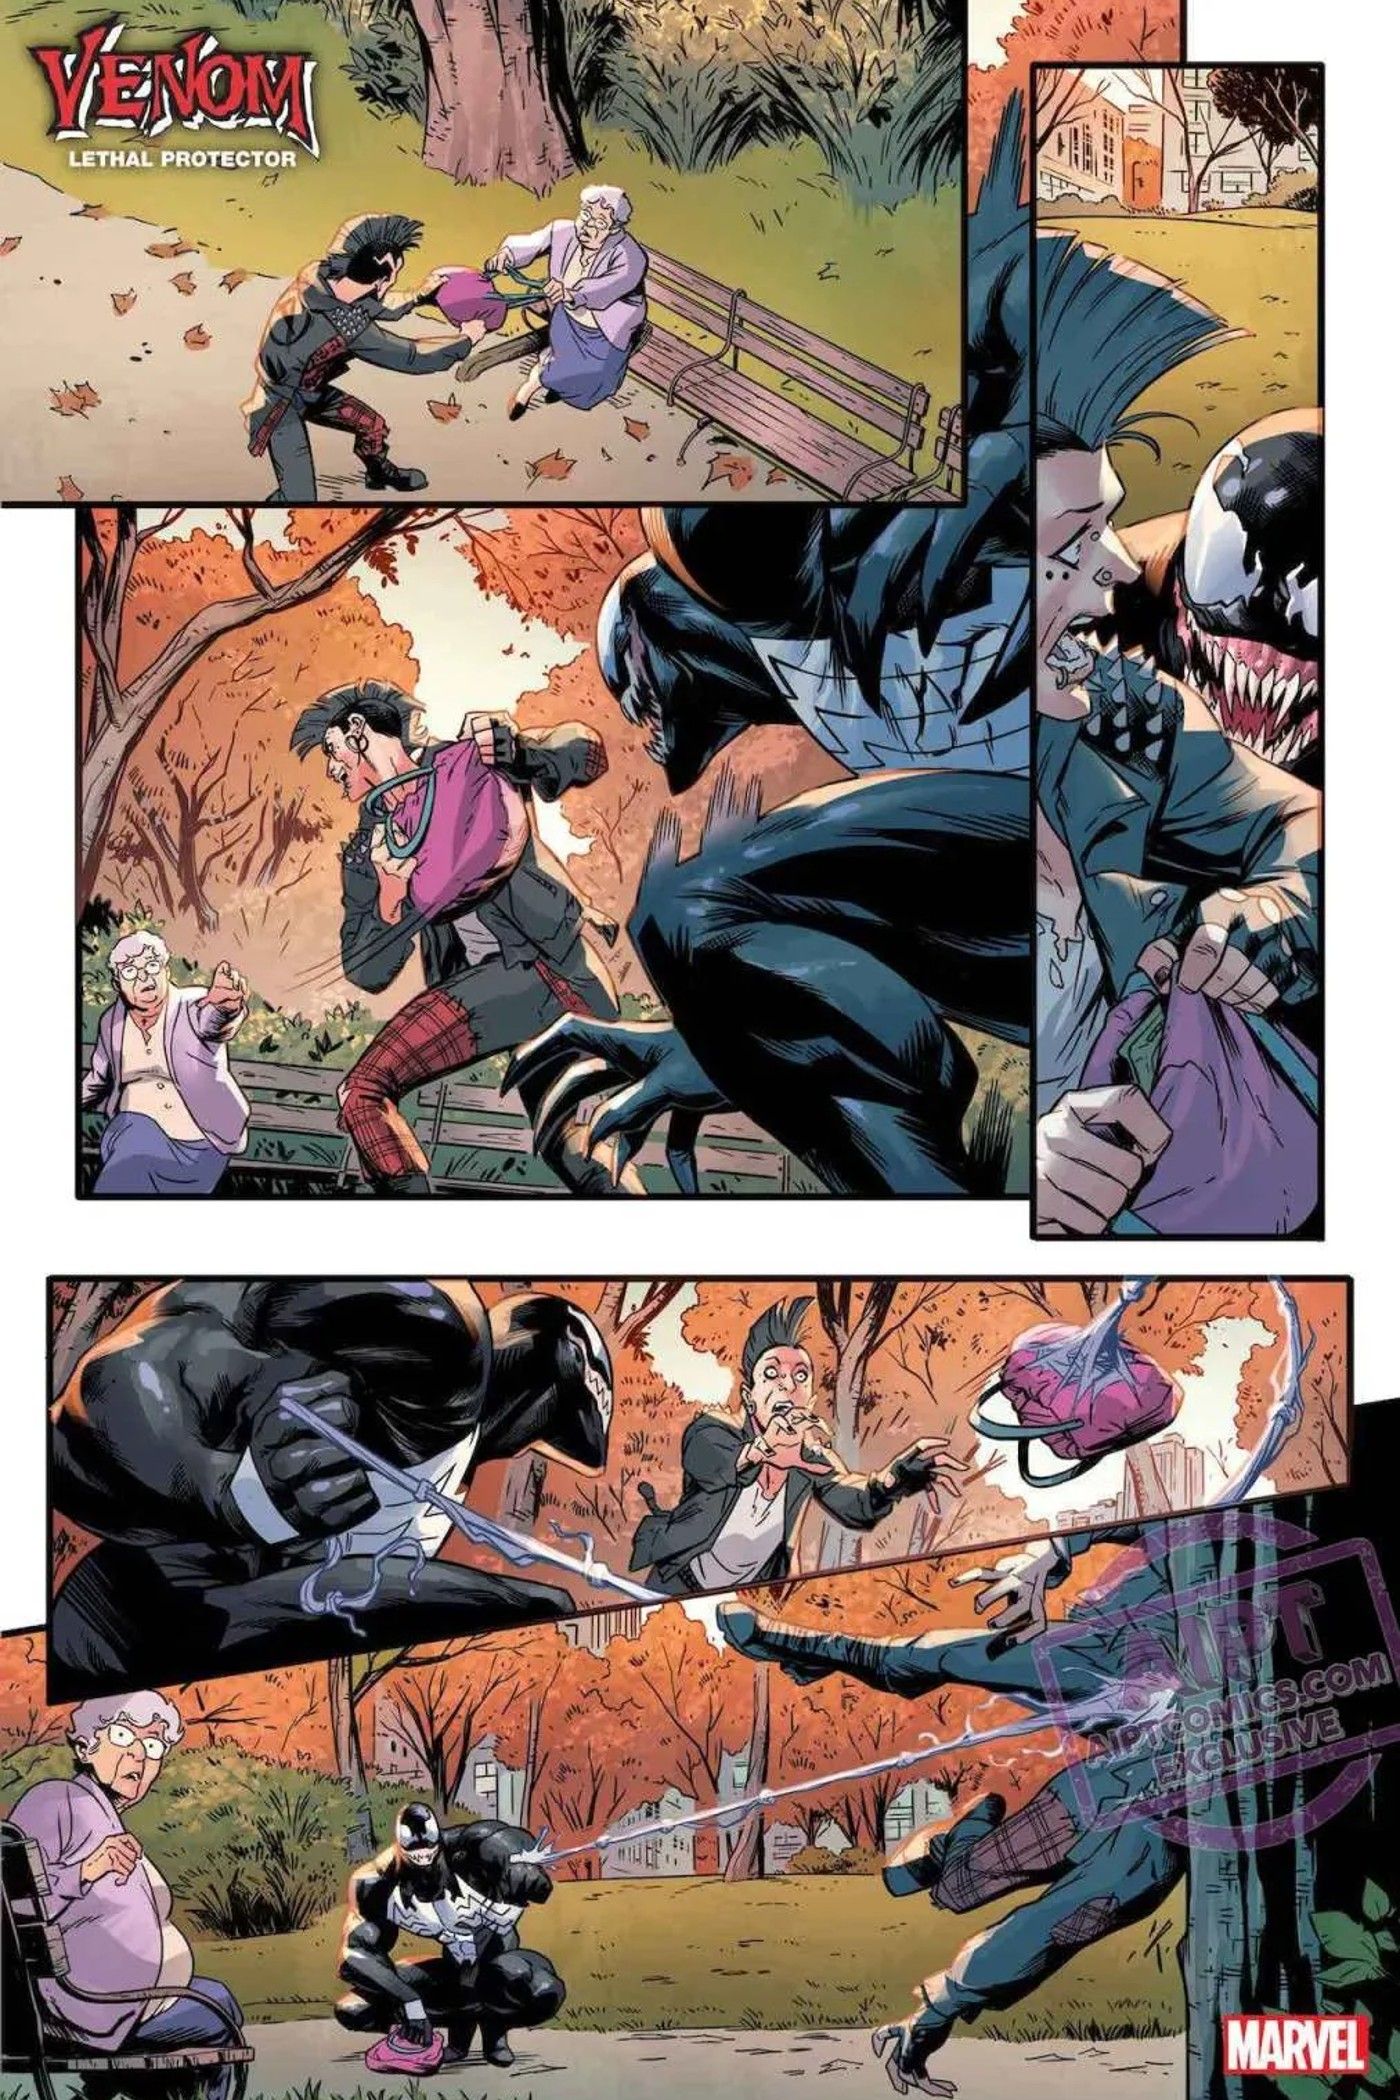 Venom Prequel Promises Secrets of Marvel's Symbiote Future